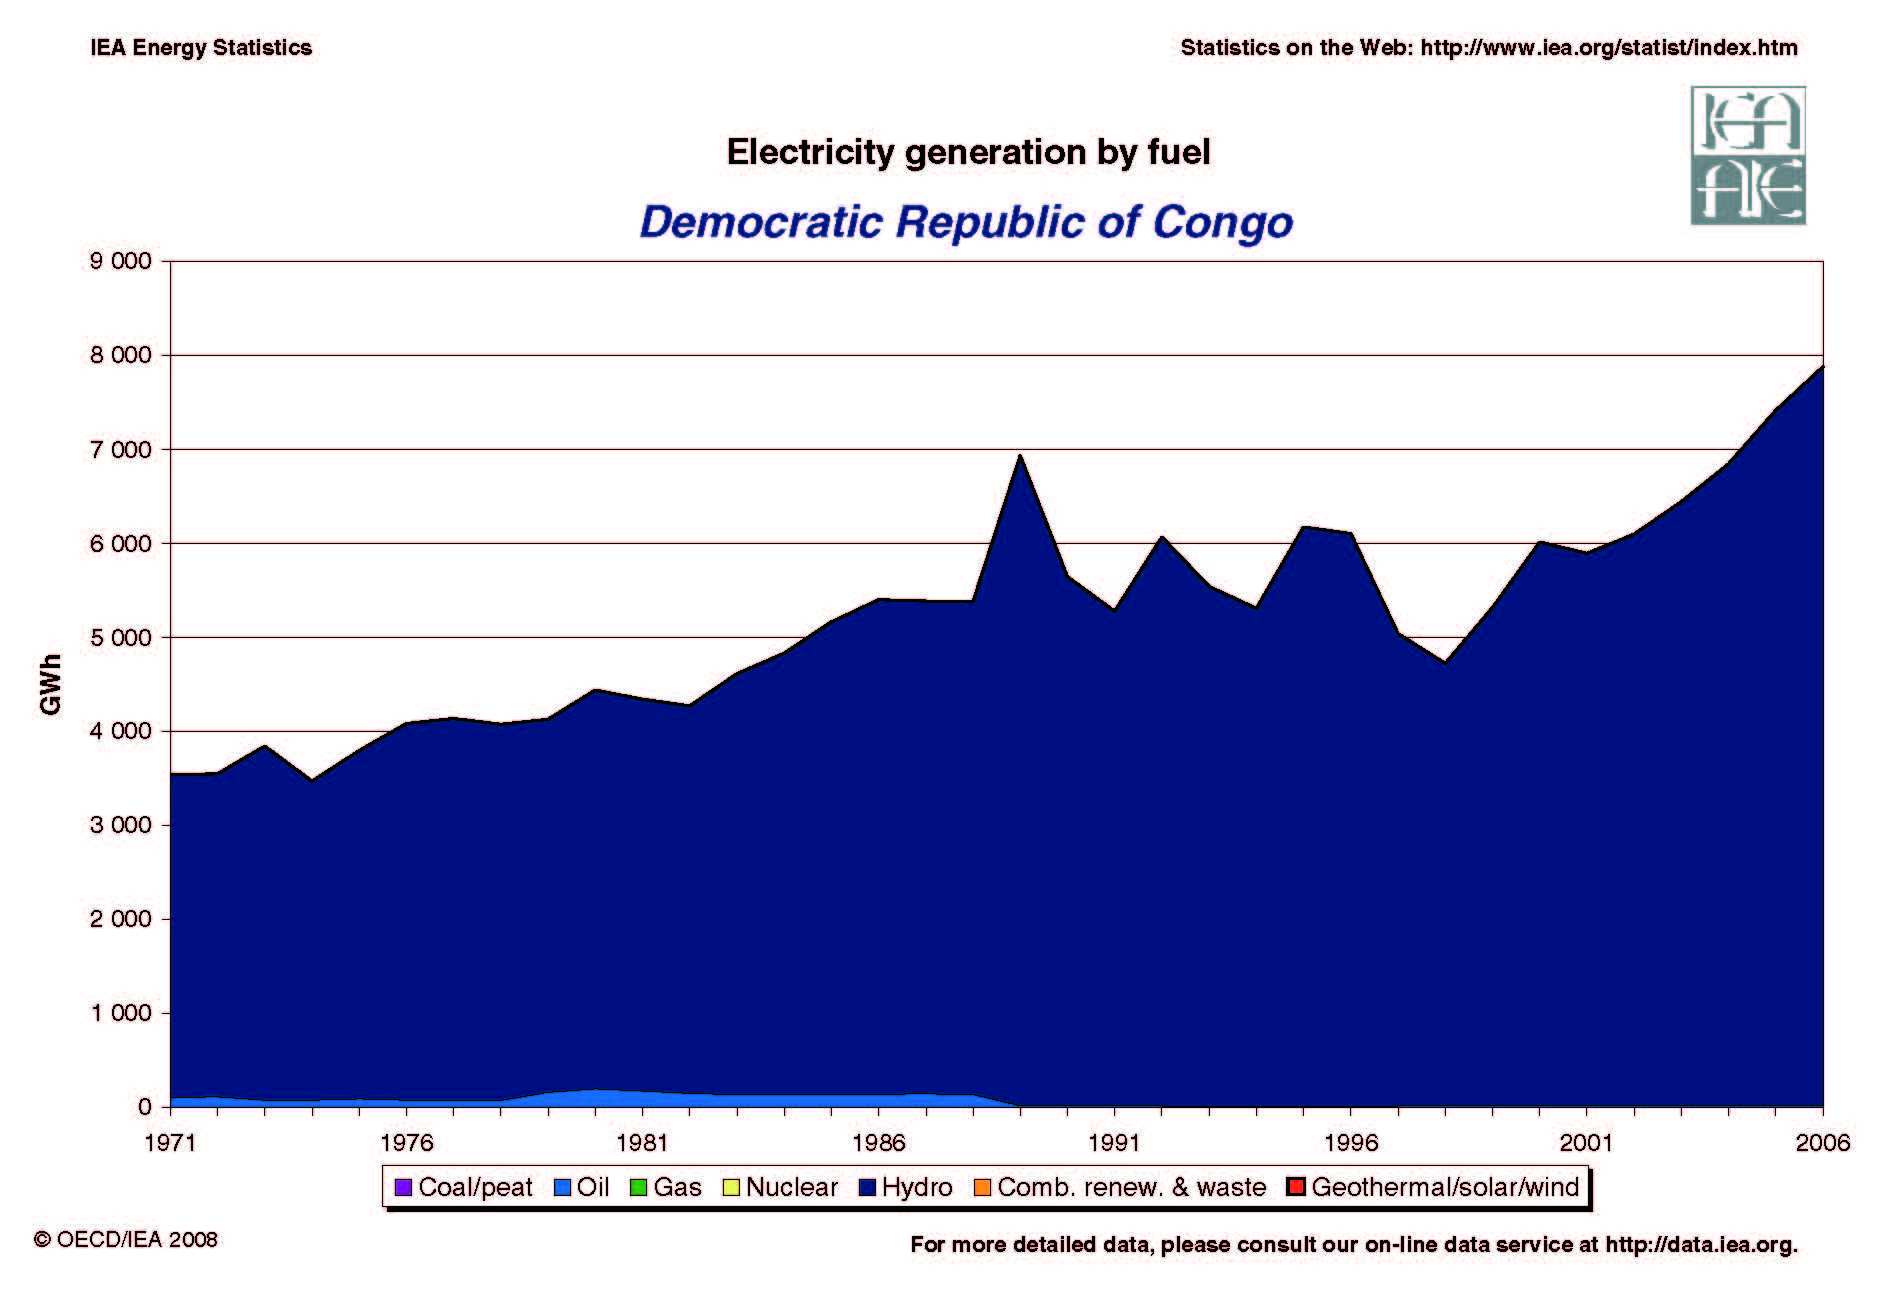 Democratic Republic of Congo Electricity Generation by Fuel 1971 - 2005